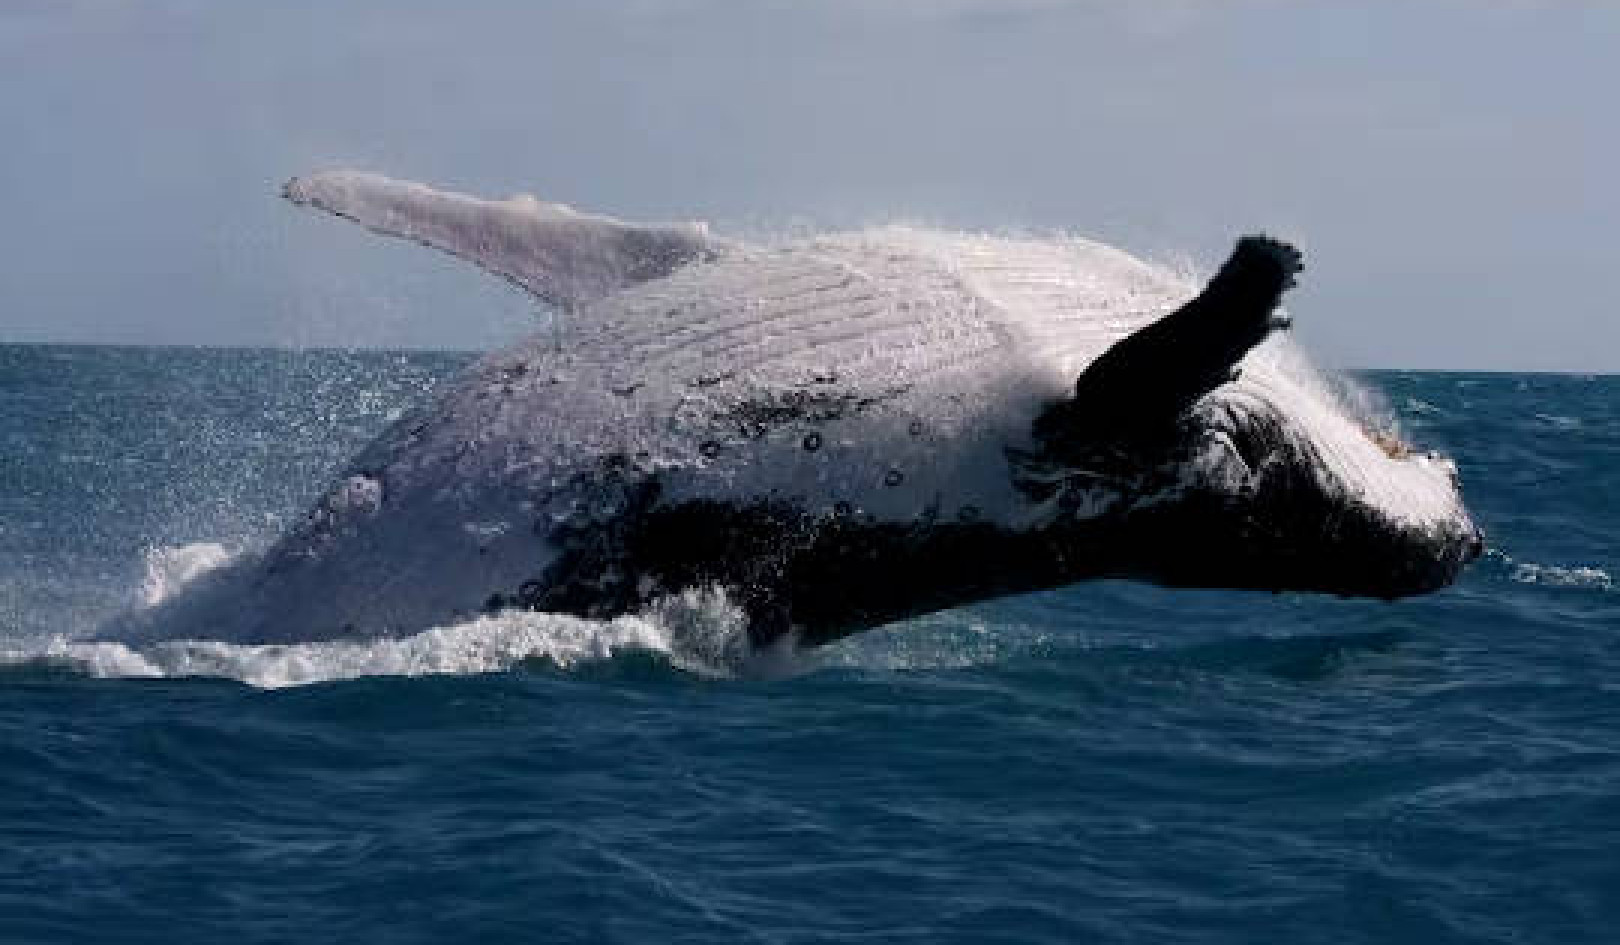 ทำไมวาฬหลังค่อมถึงร้องเพลงน้อยลงและต่อสู้มากขึ้น